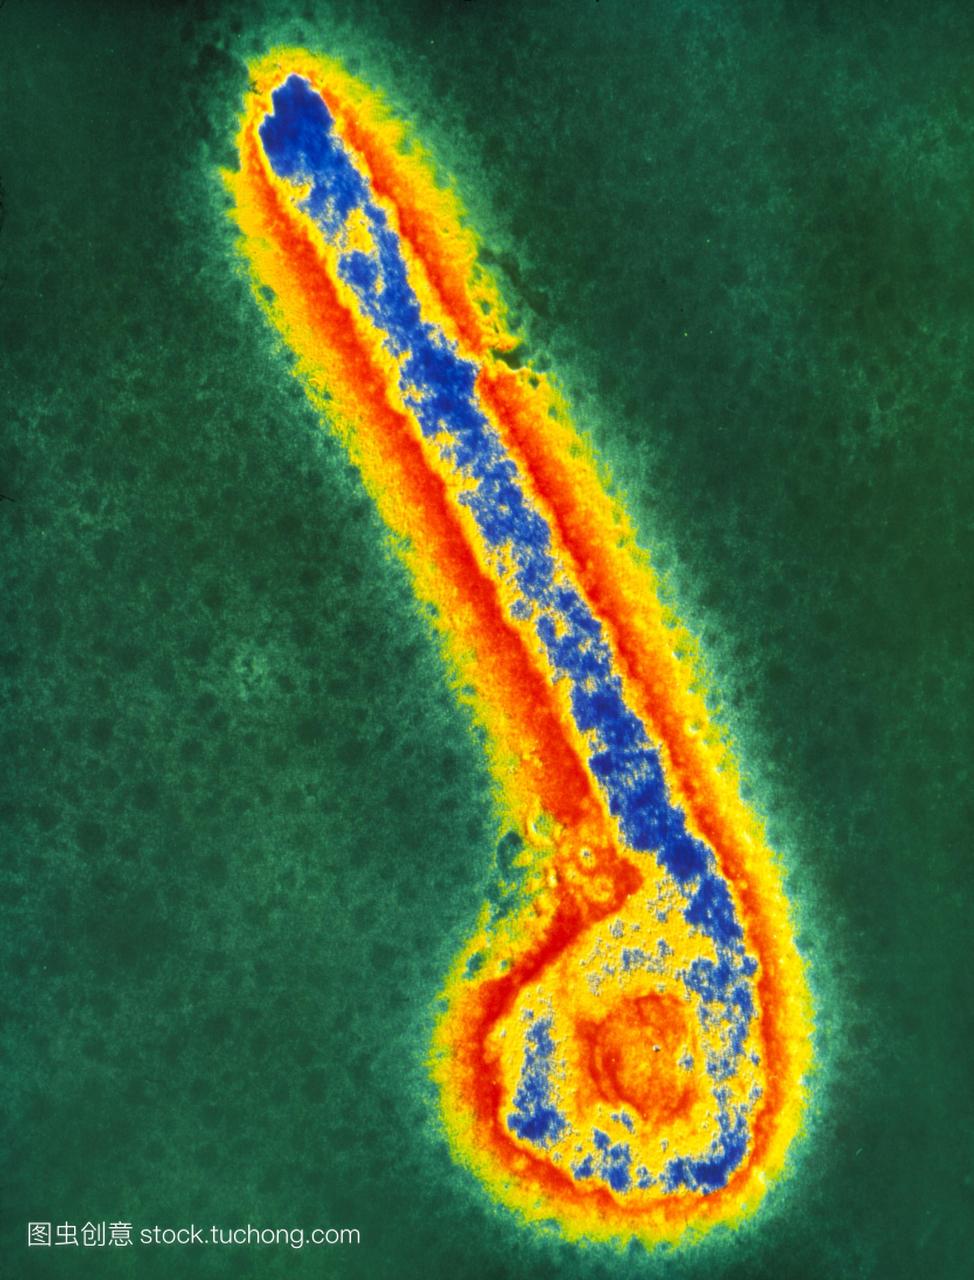 埃博拉病毒的伪彩色透射电子显微照片一群丝状